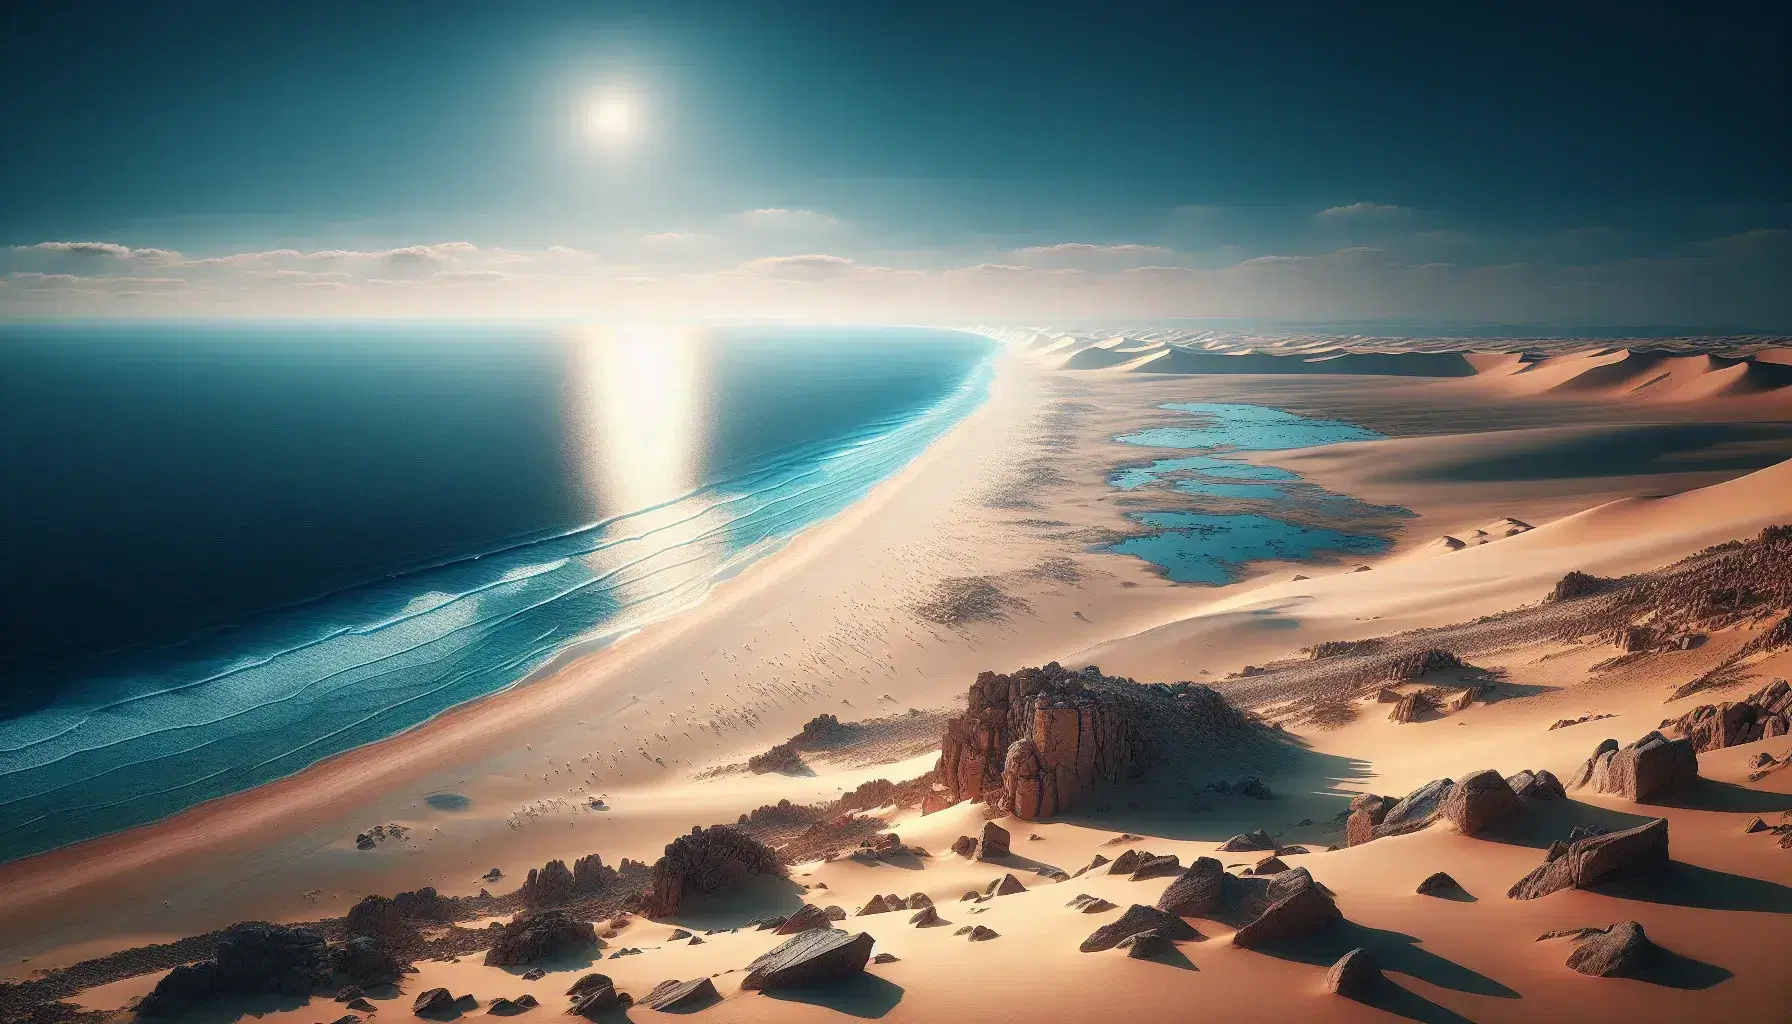 Vista panorámica de una costa desértica con arena beige y formaciones rocosas frente a un mar azul bajo un cielo despejado, reflejando tranquilidad y amplitud natural.